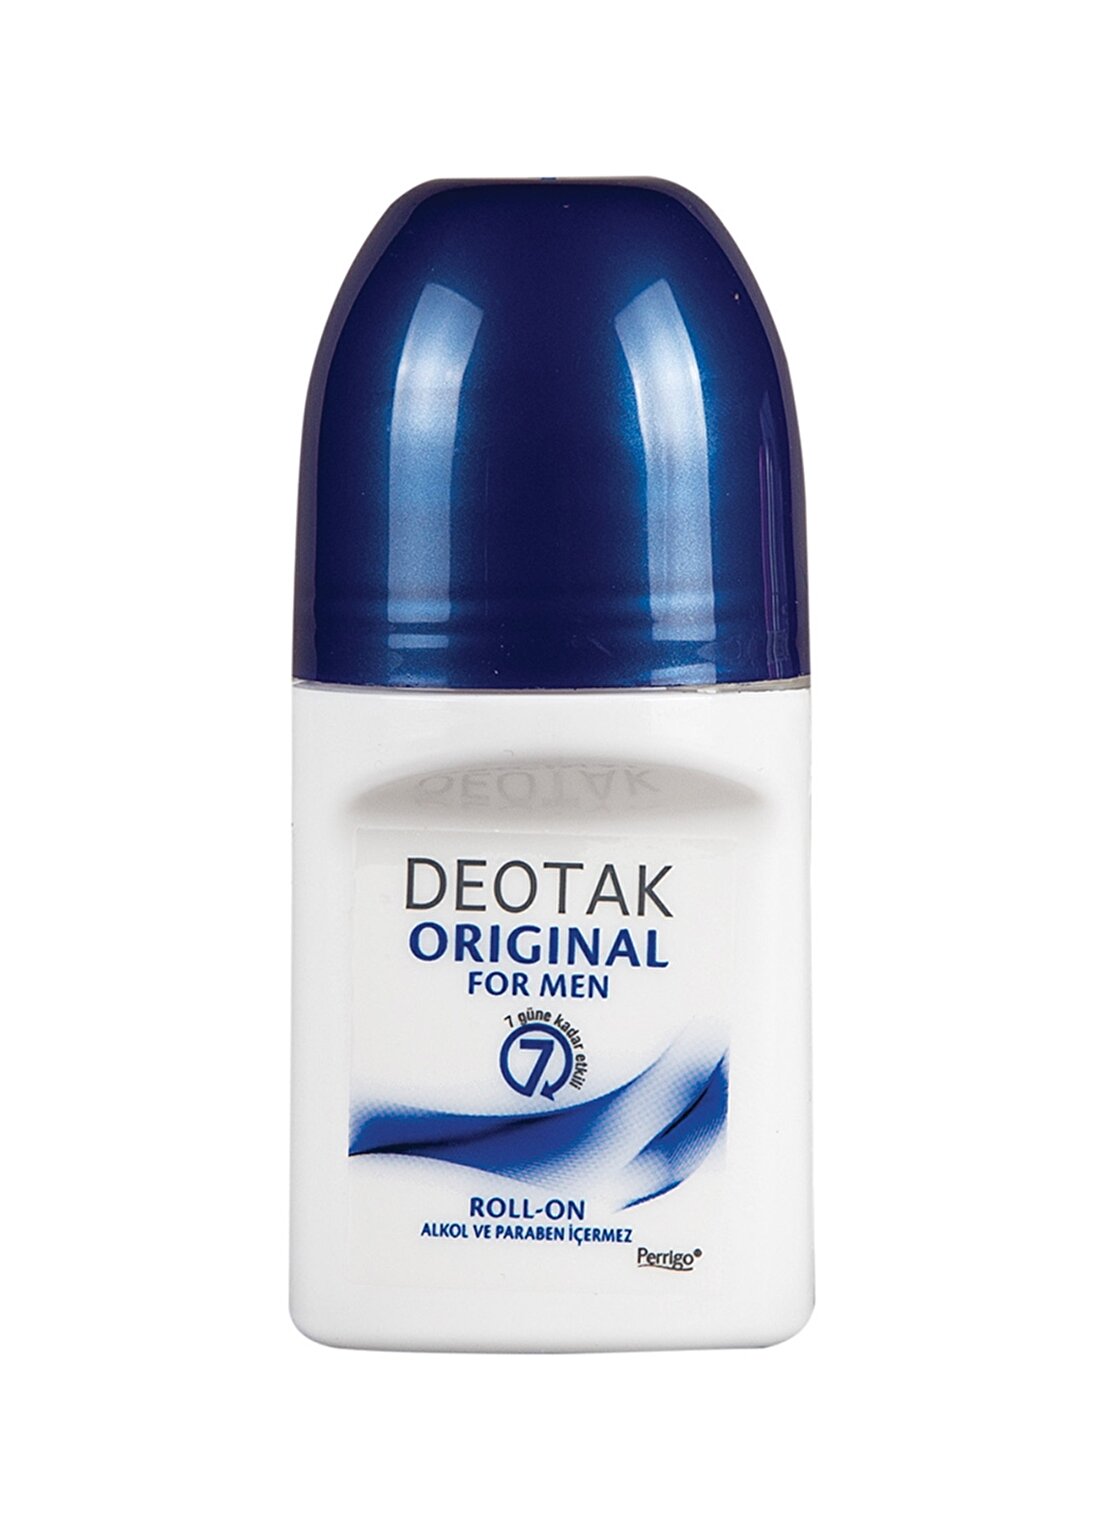 Sebamed Deotak Orginial For Men 35 Ml Roll-On Deodorant